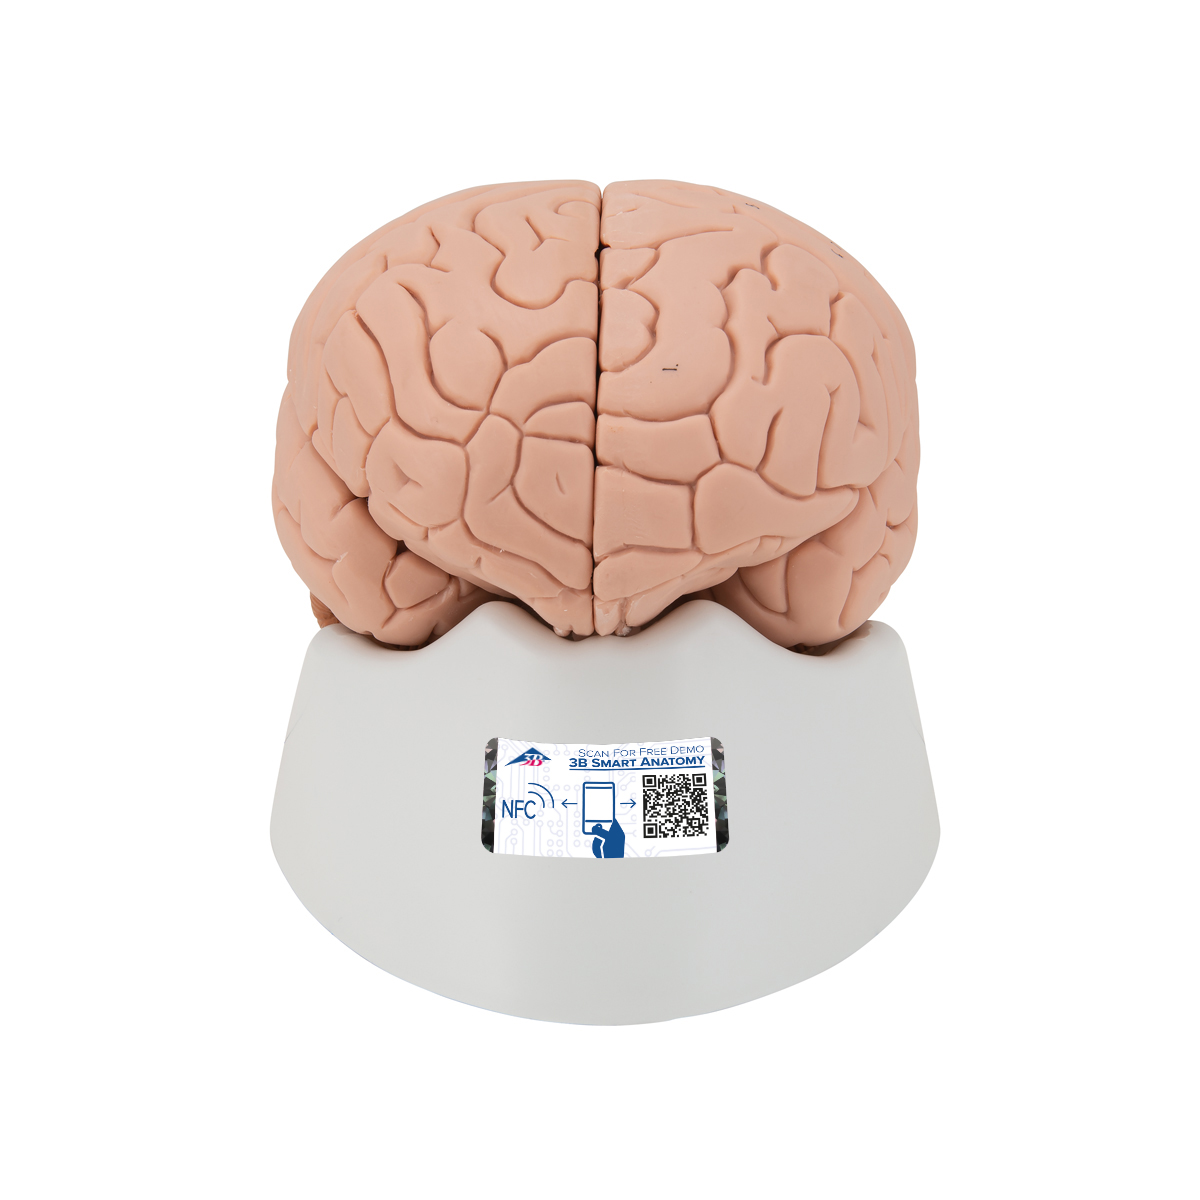 Menschliches Gehirnmodell für Einsteiger, 2-teilig - 3B Smart Anatomy, Bestellnummer 1000223, C15/1, 3B Scientific